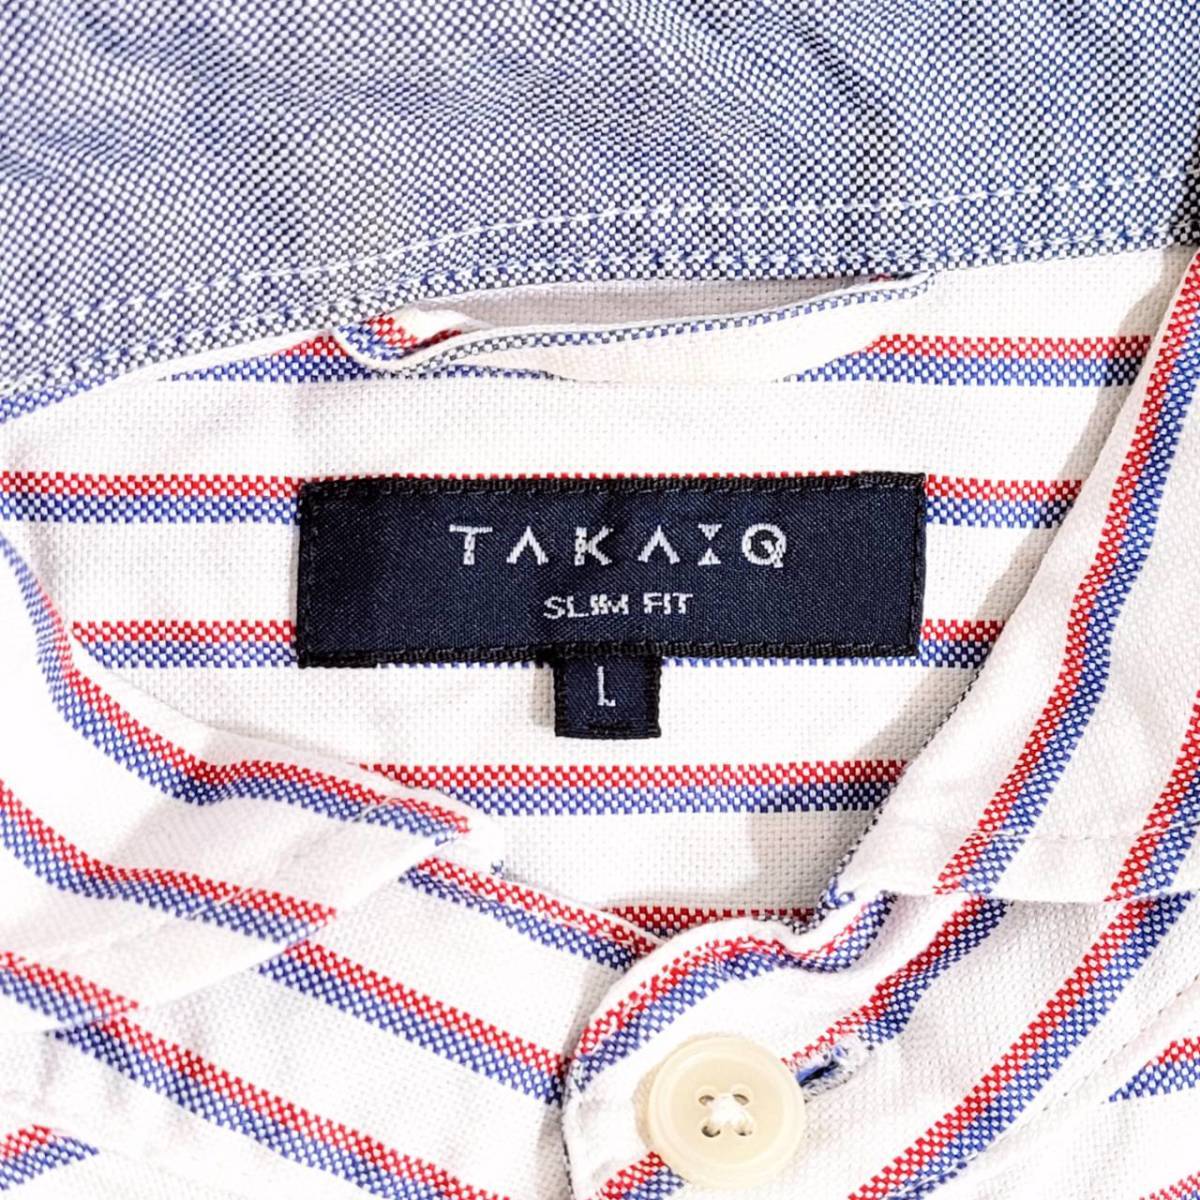 【22353】 TAKA-Q タカキュー 7分袖シャツ L 白 ホワイト 青 ブルー 赤 レッド ストライプ 丸襟 ダブルポケット カジュアル